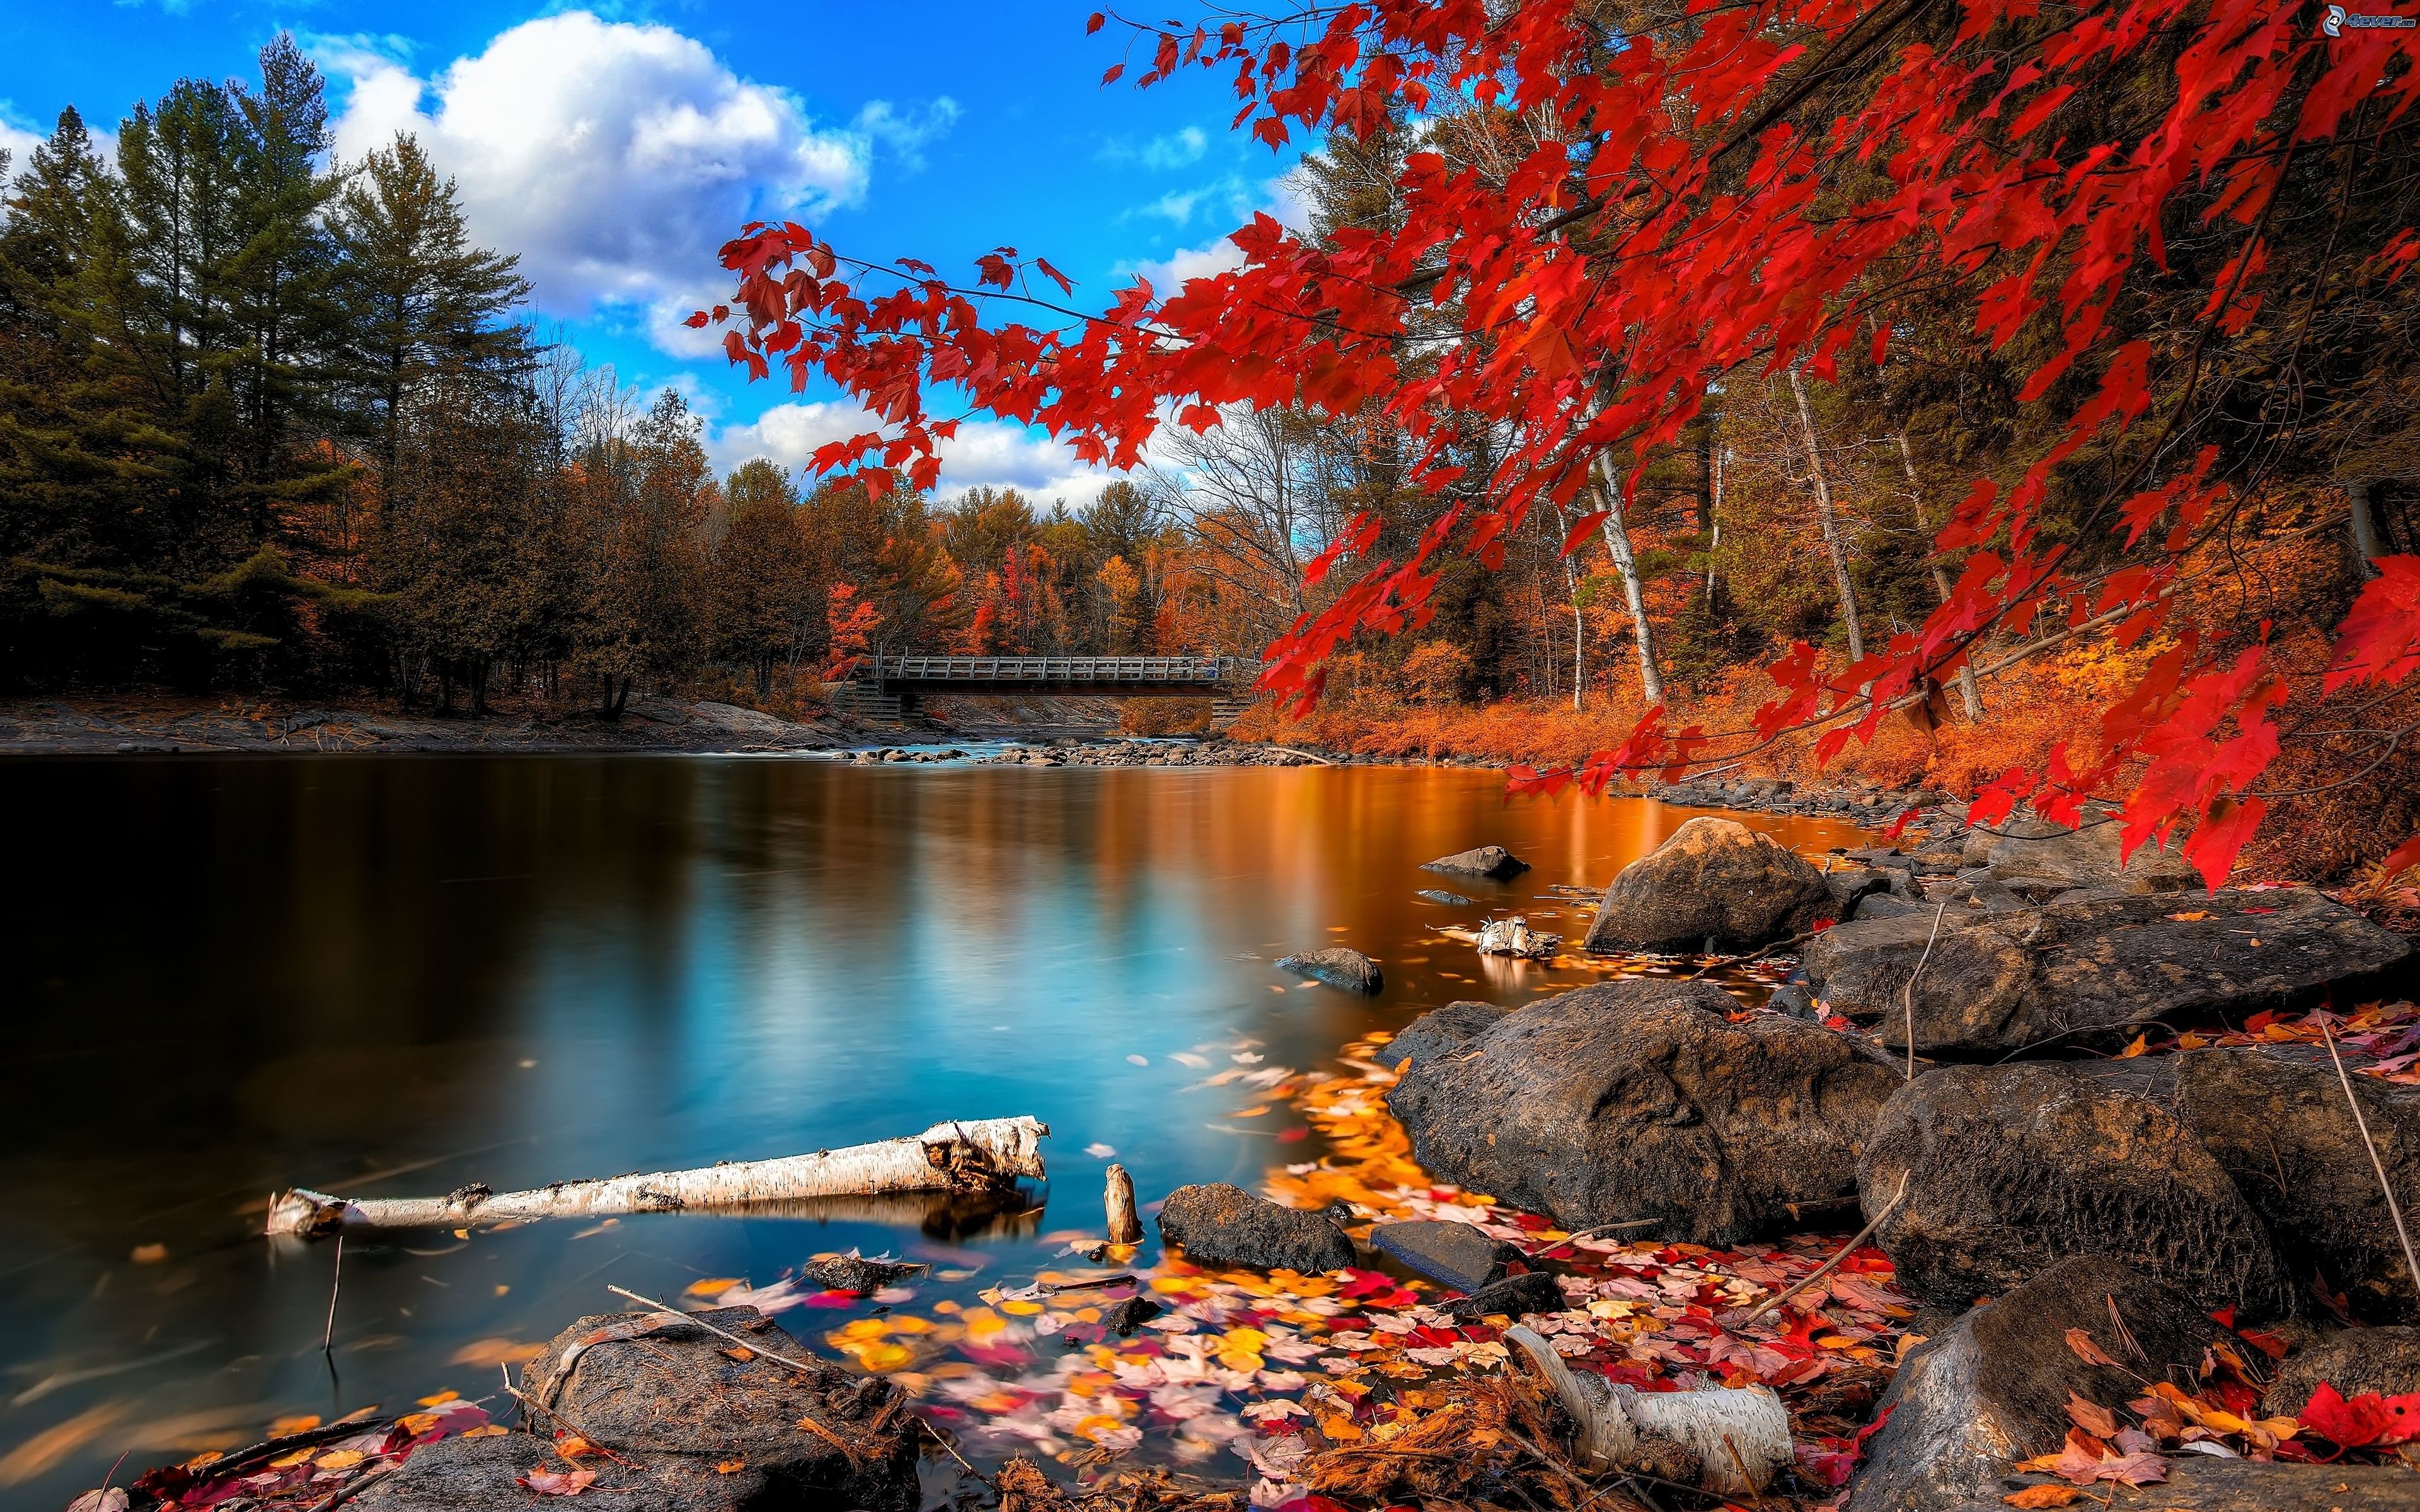 paisaje-de-otono,-hojas-de-colores,-nivel-de-aguas-tranquilas,-puente-162719